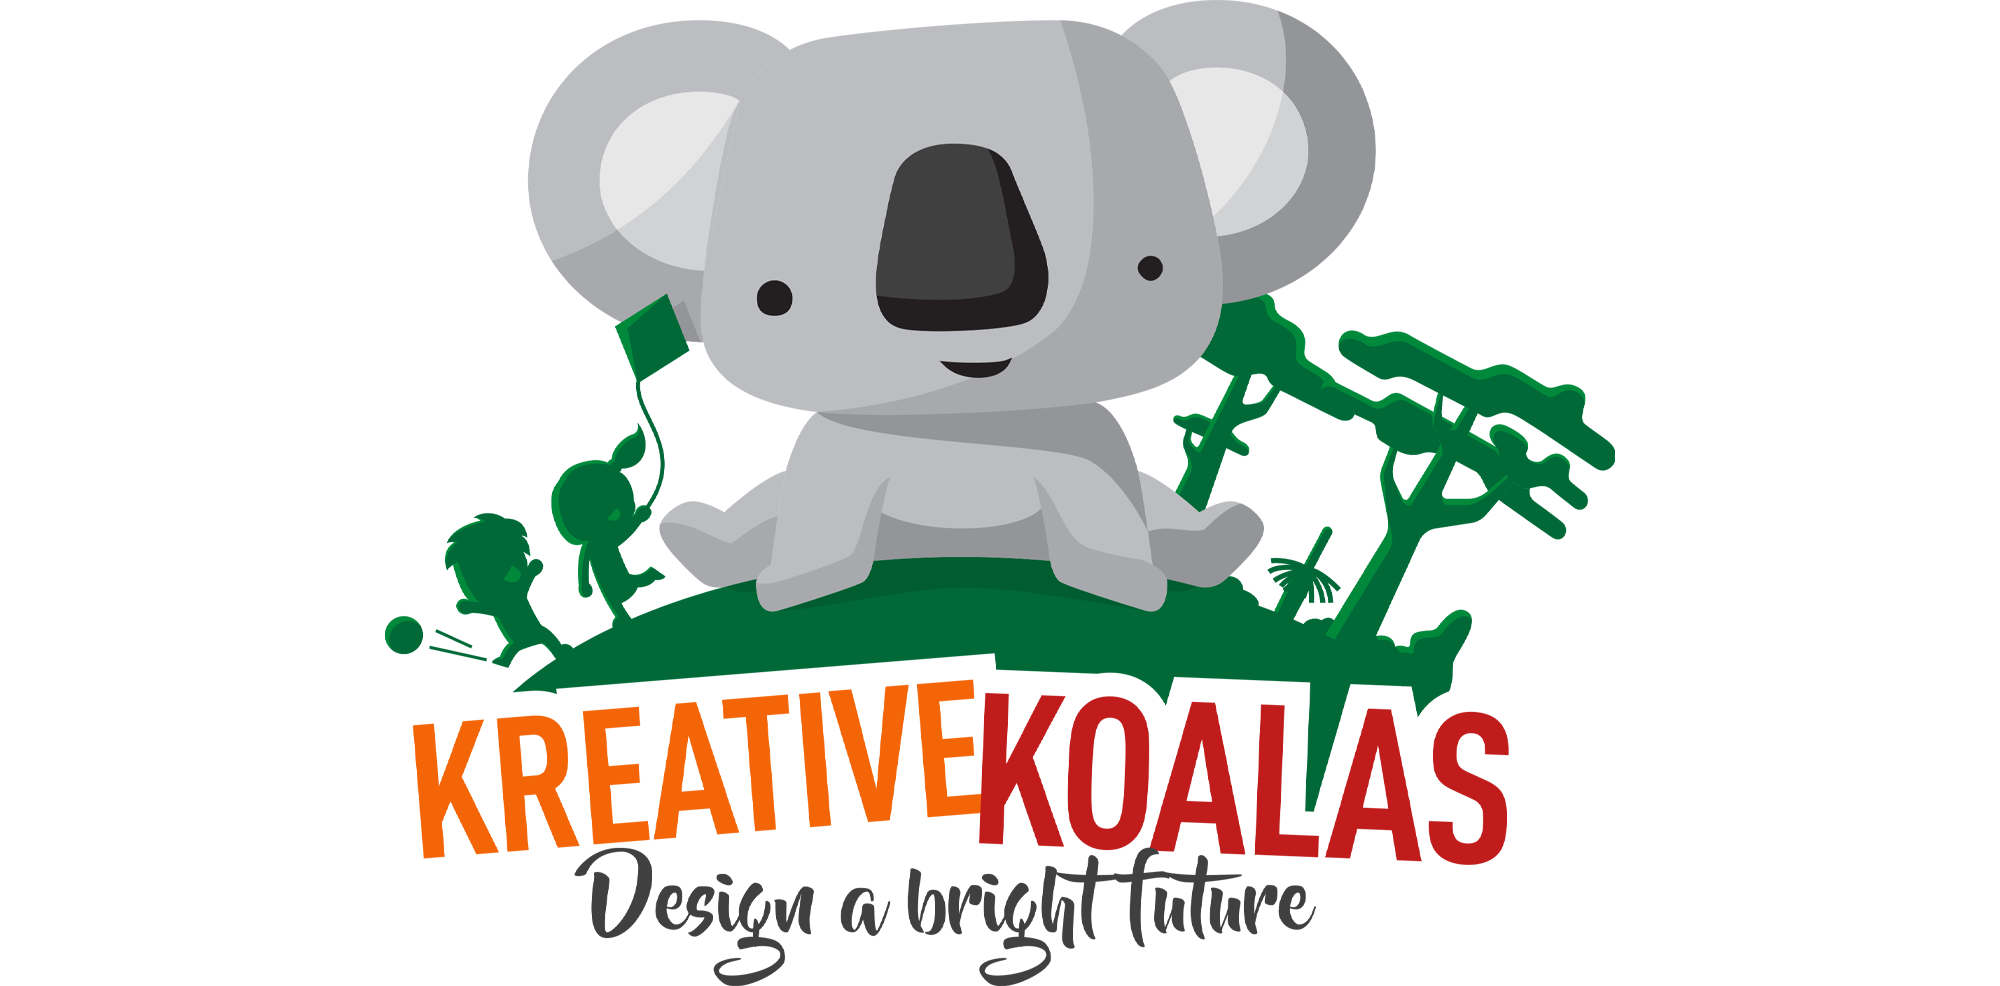 kreative koalas